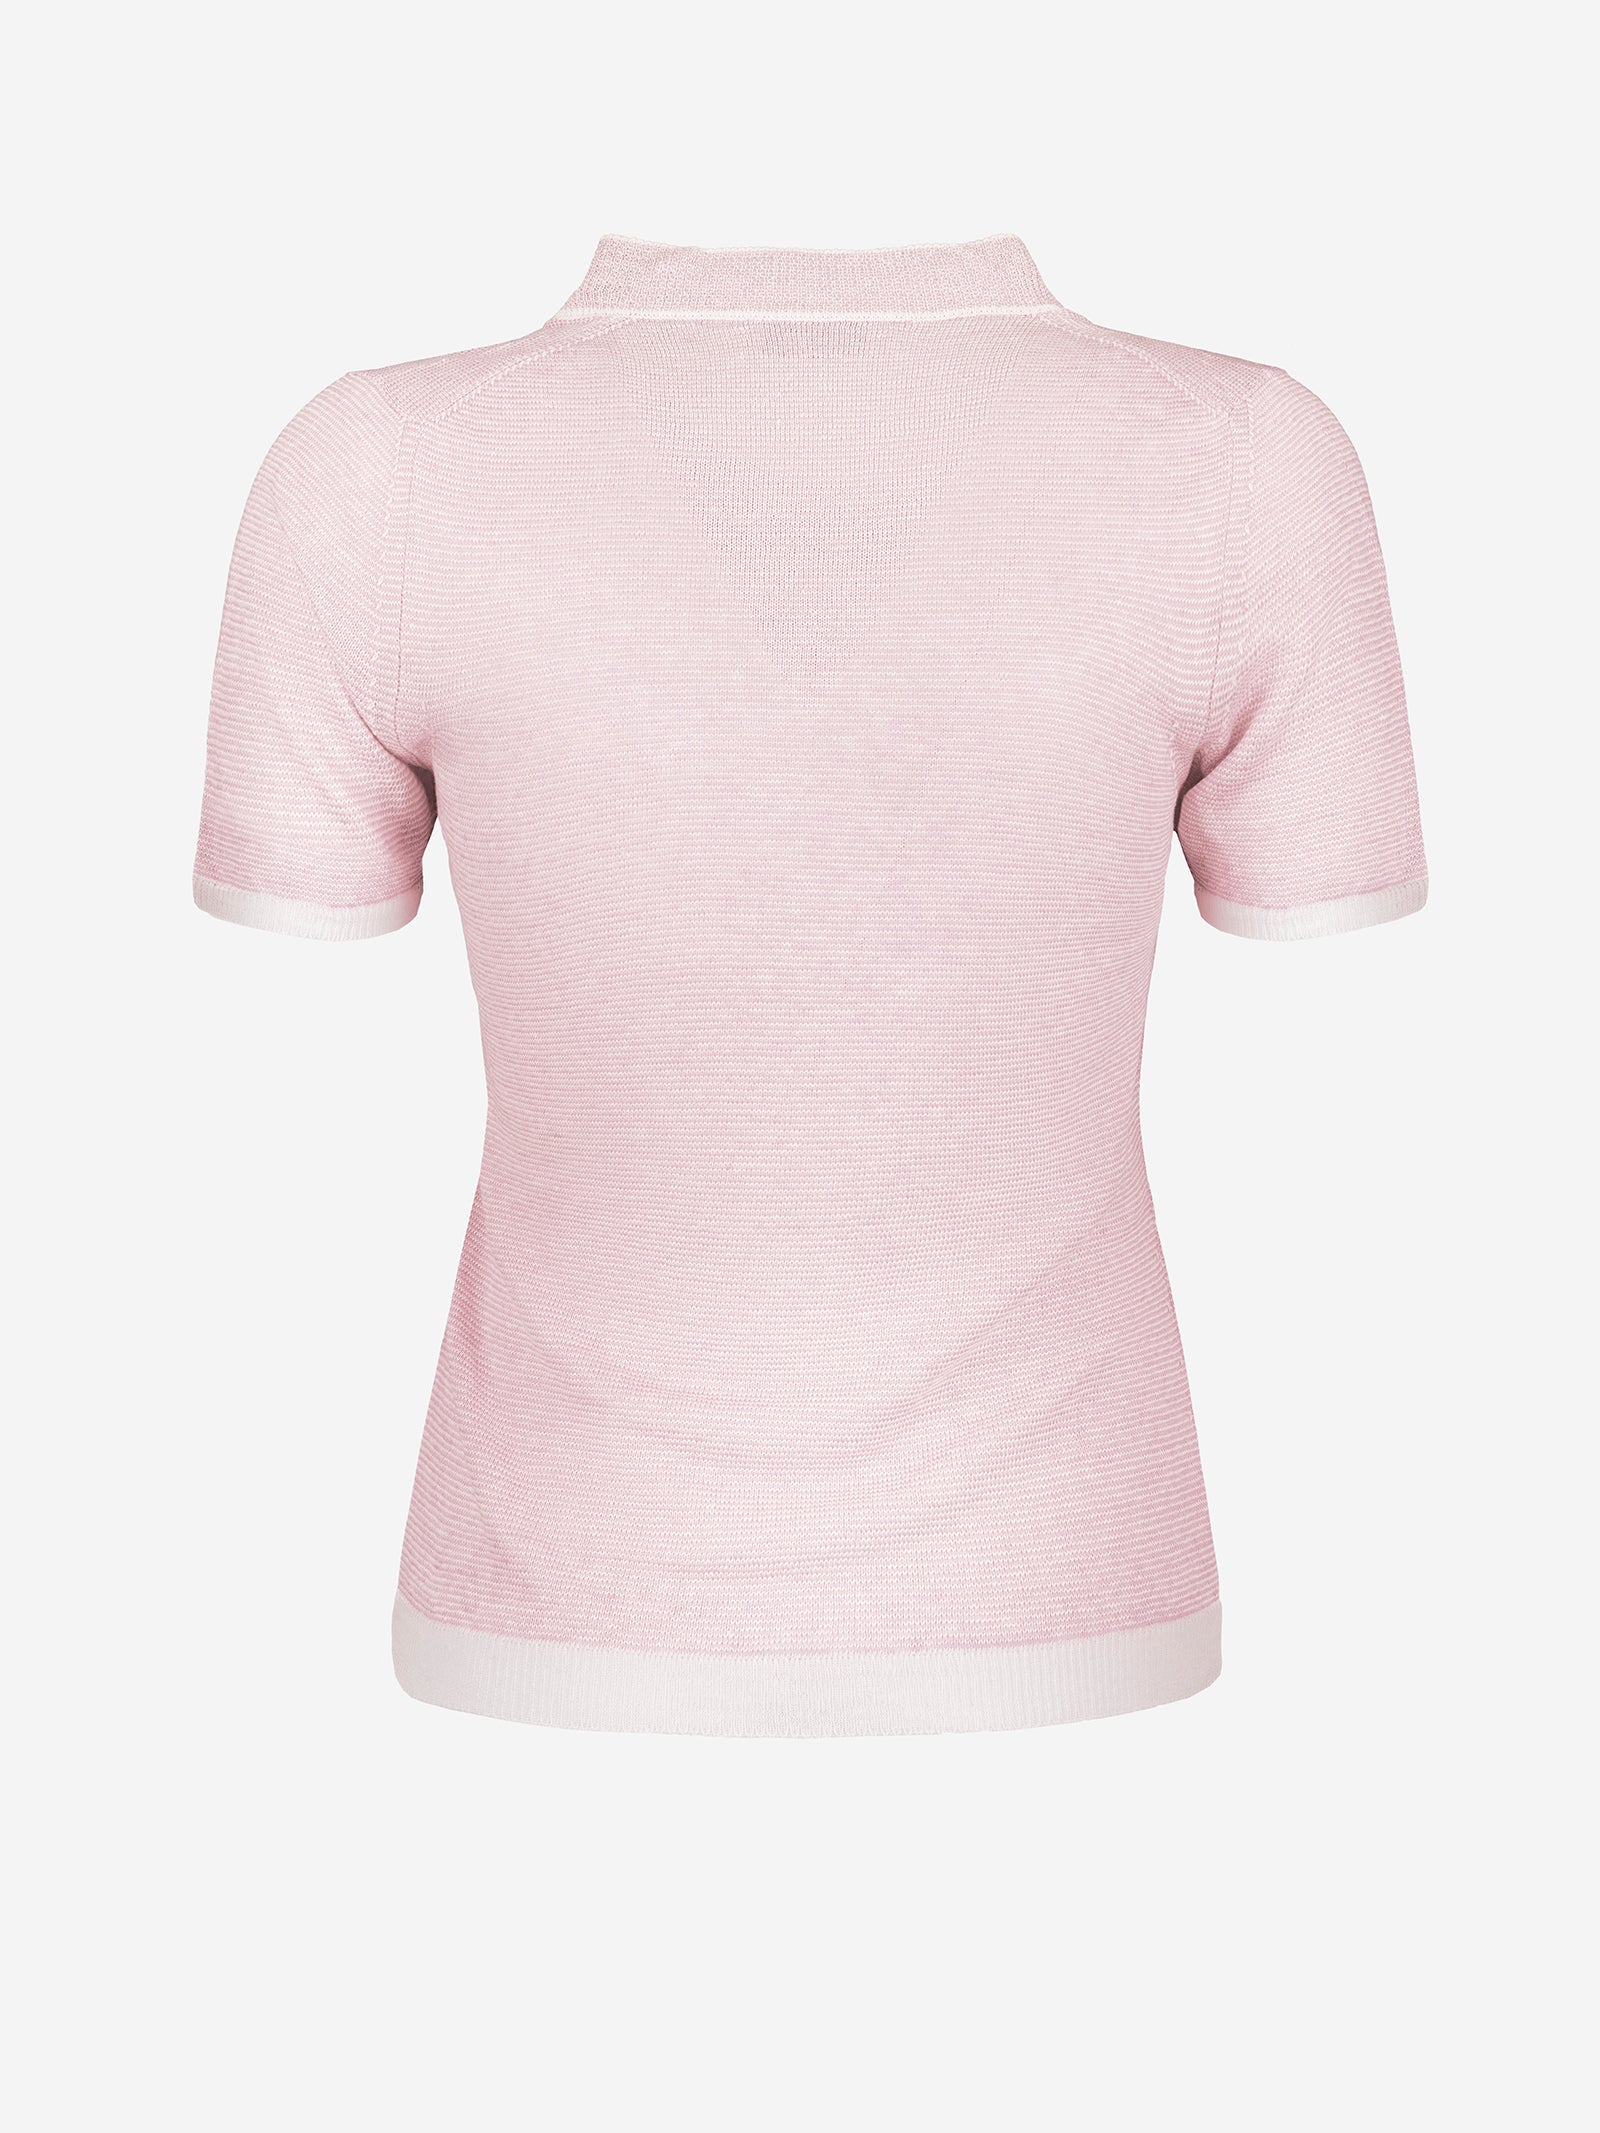 Top Portofino 100% Capri pink and white linen top back